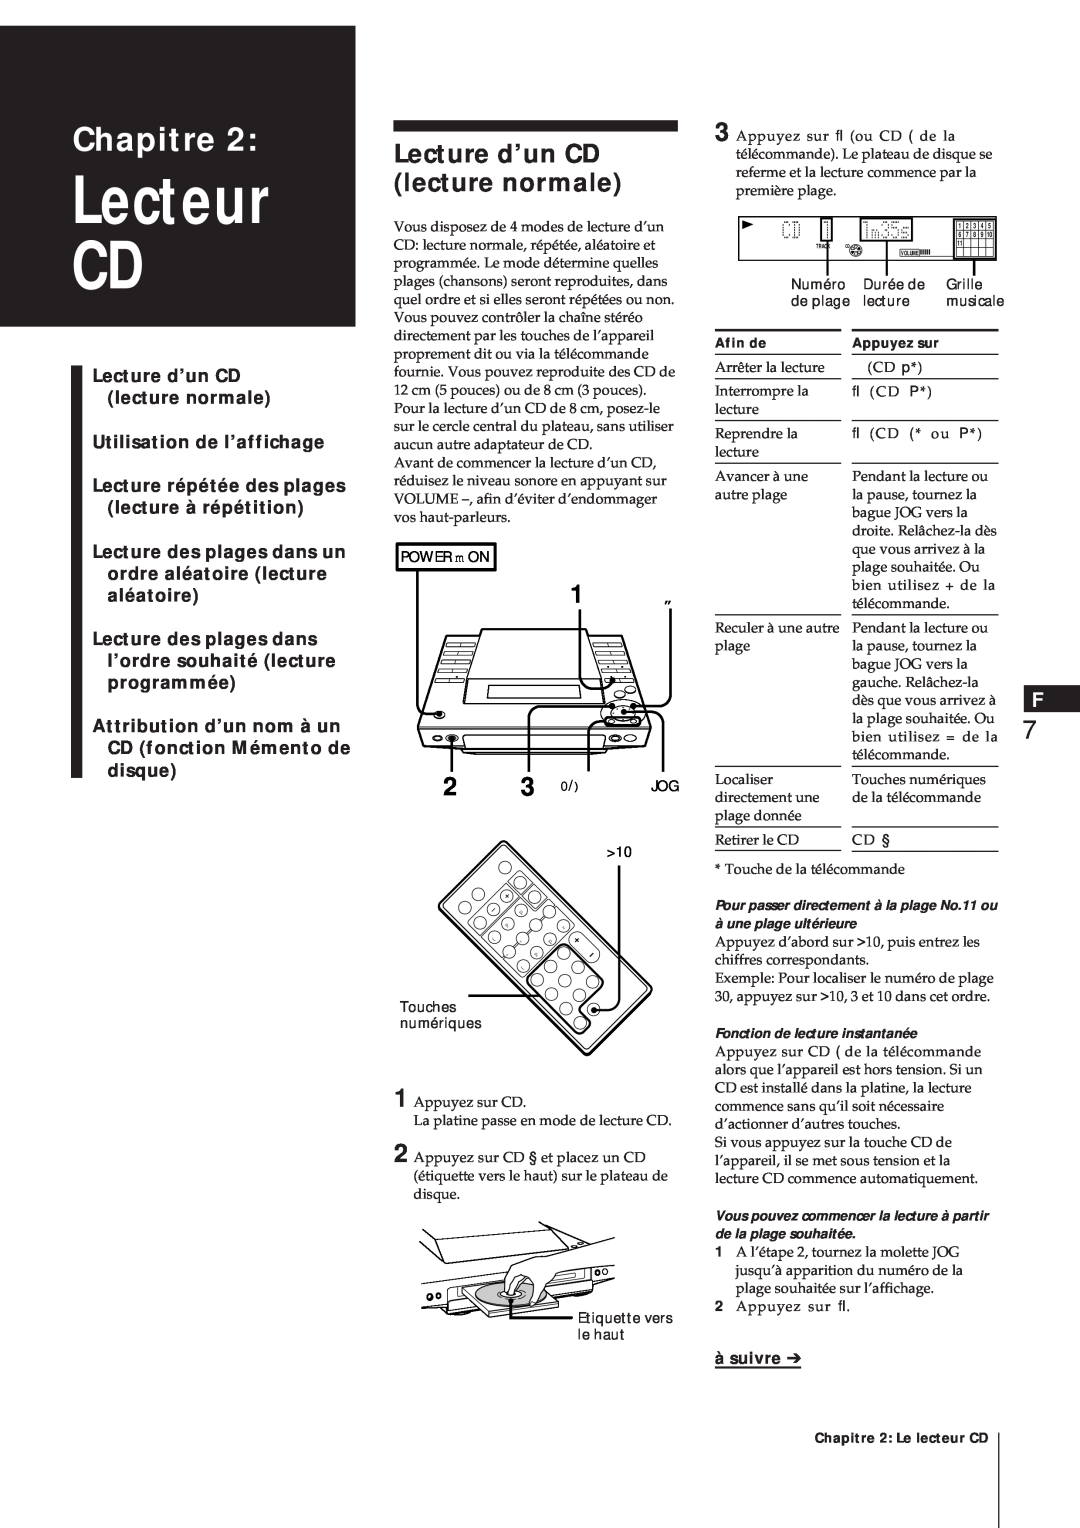 Sony MJ-L1A manual Lecteur CD, Lecture d’un CD lecture normale, Chapitre, Utilisation de l’affichage, à suivre 